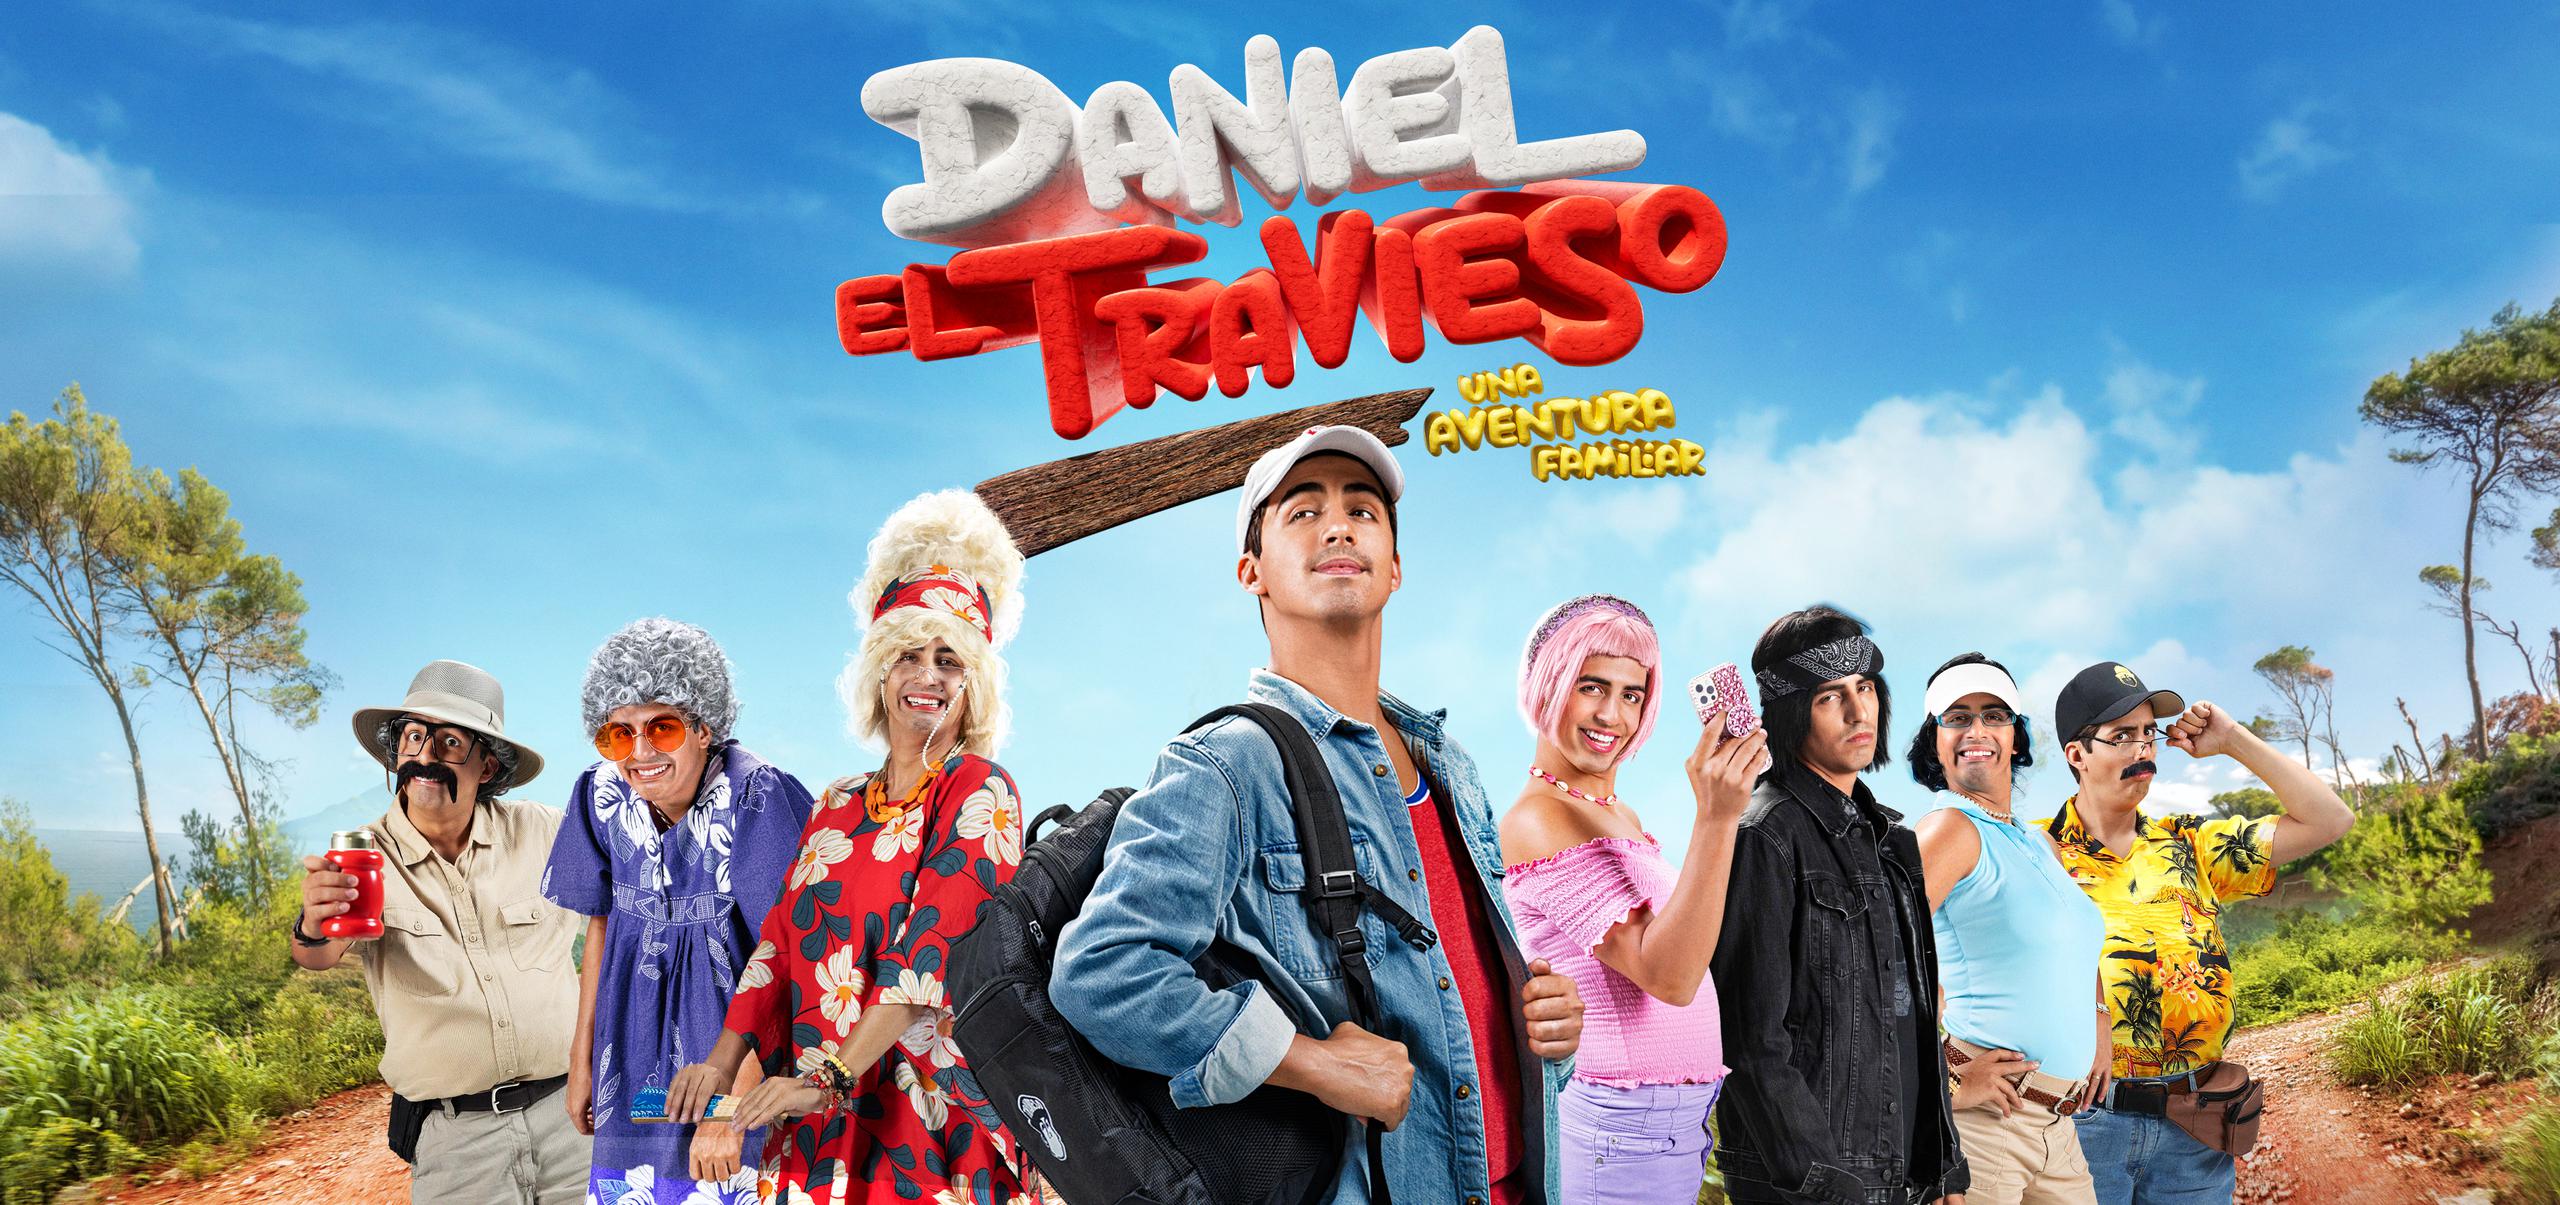 Daniel el Travieso: Una Aventura Familiar, es un proyecto que promete risas, sorpresas y momentos emotivos, capturando la esencia de la familia.